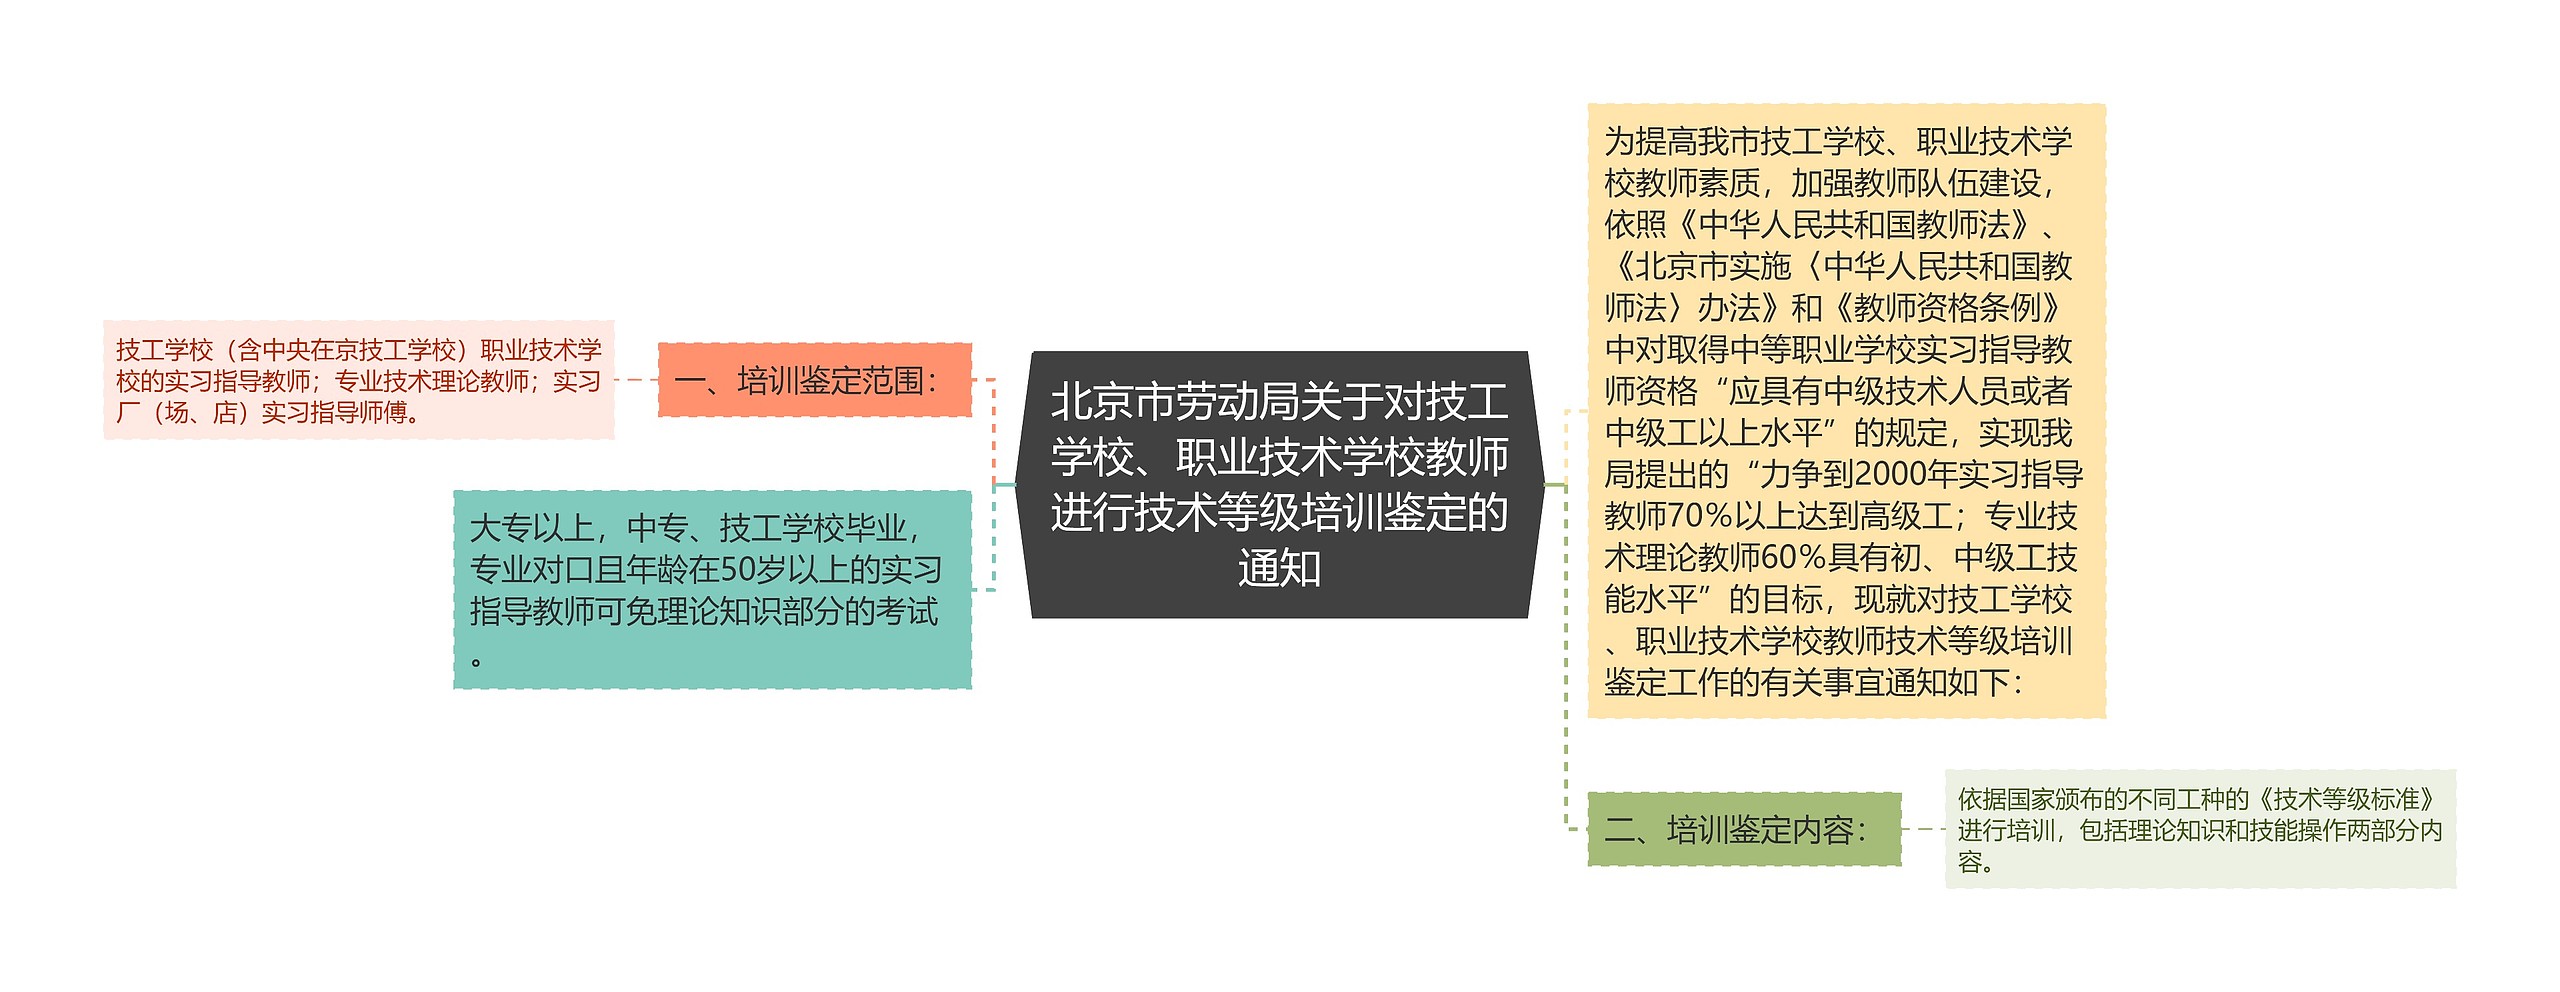 北京市劳动局关于对技工学校、职业技术学校教师进行技术等级培训鉴定的通知